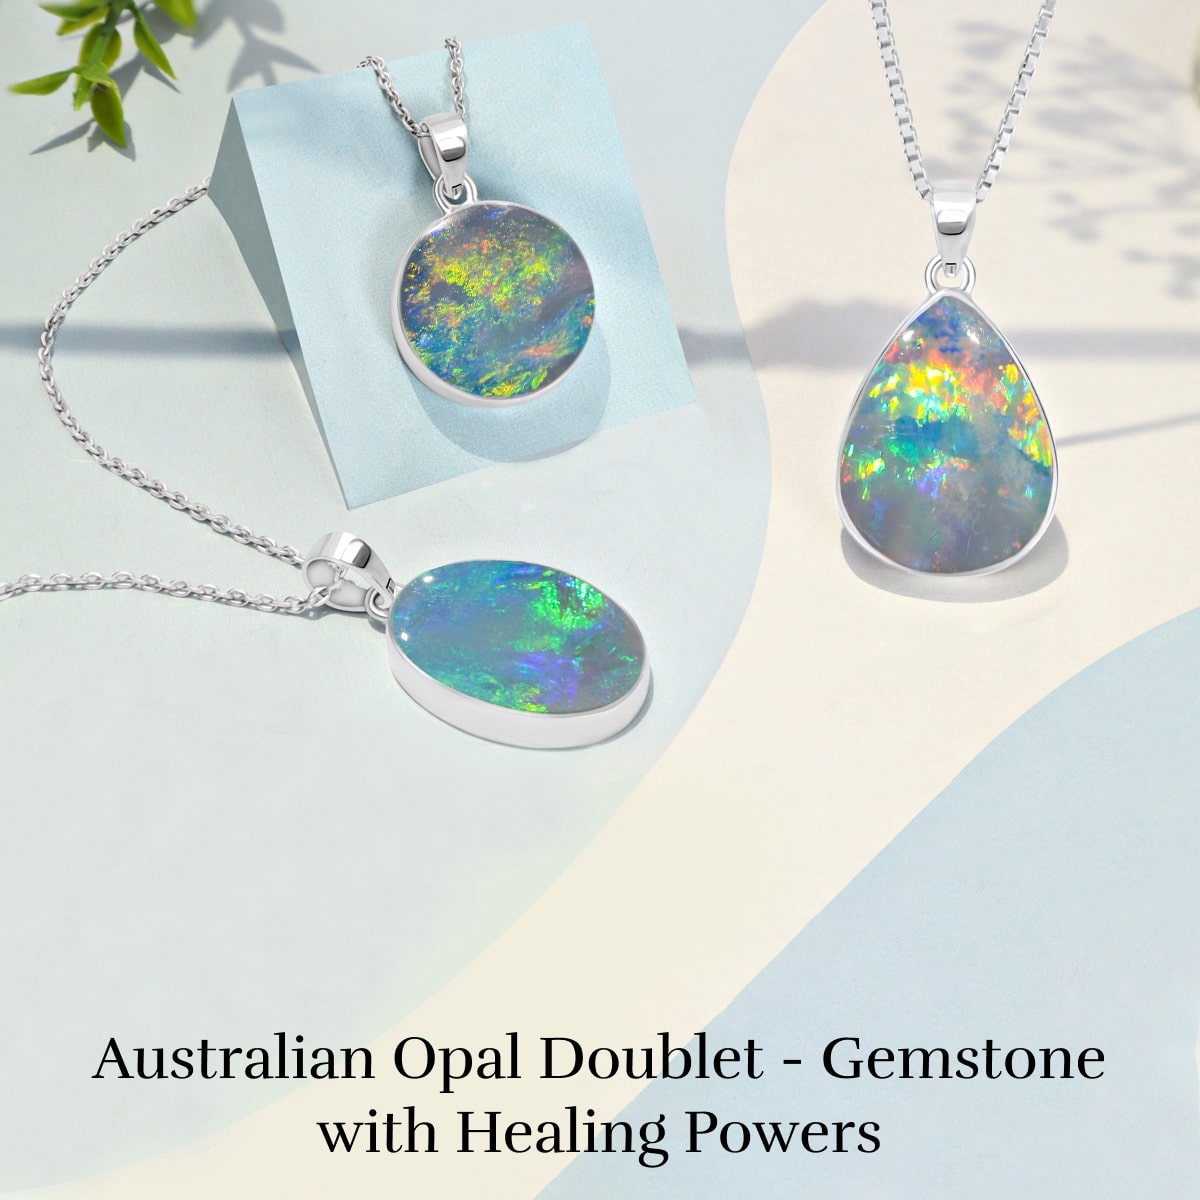 Healing properties of Australian Opal Doublet